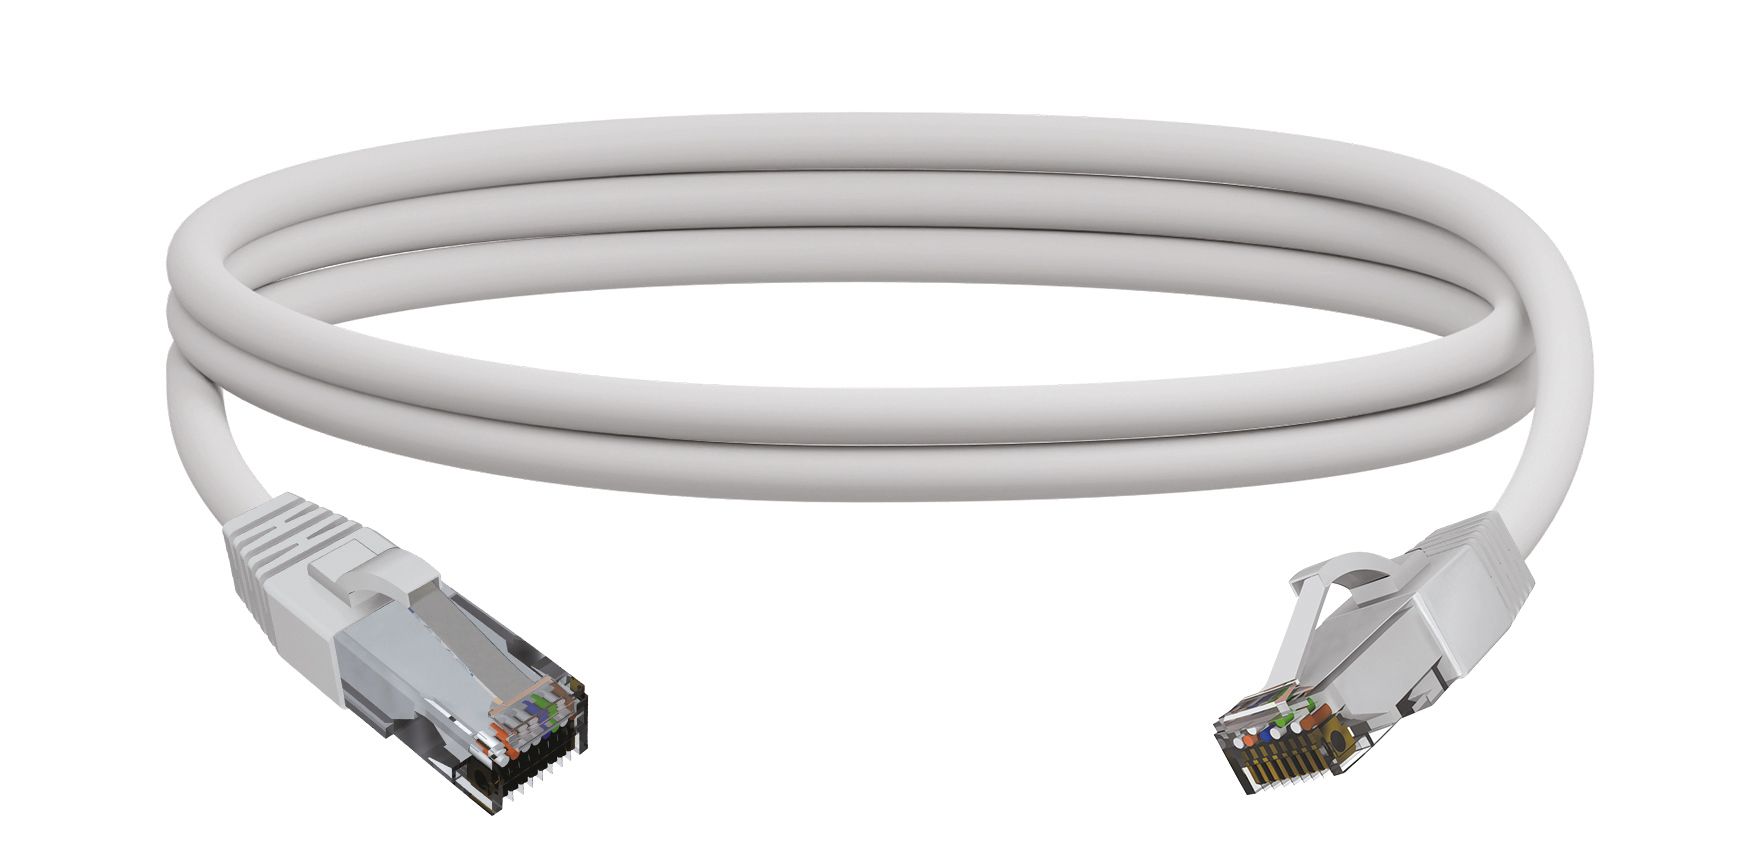 Taille: 10m Couleur: Blanc CAT6e Flat Ethernet Cable de réseau LAN pour Transmission Haute Vitesse Câble Ethernet pour Ordinateur Portable Cordon de Brassage pour Bureau à Domicile 